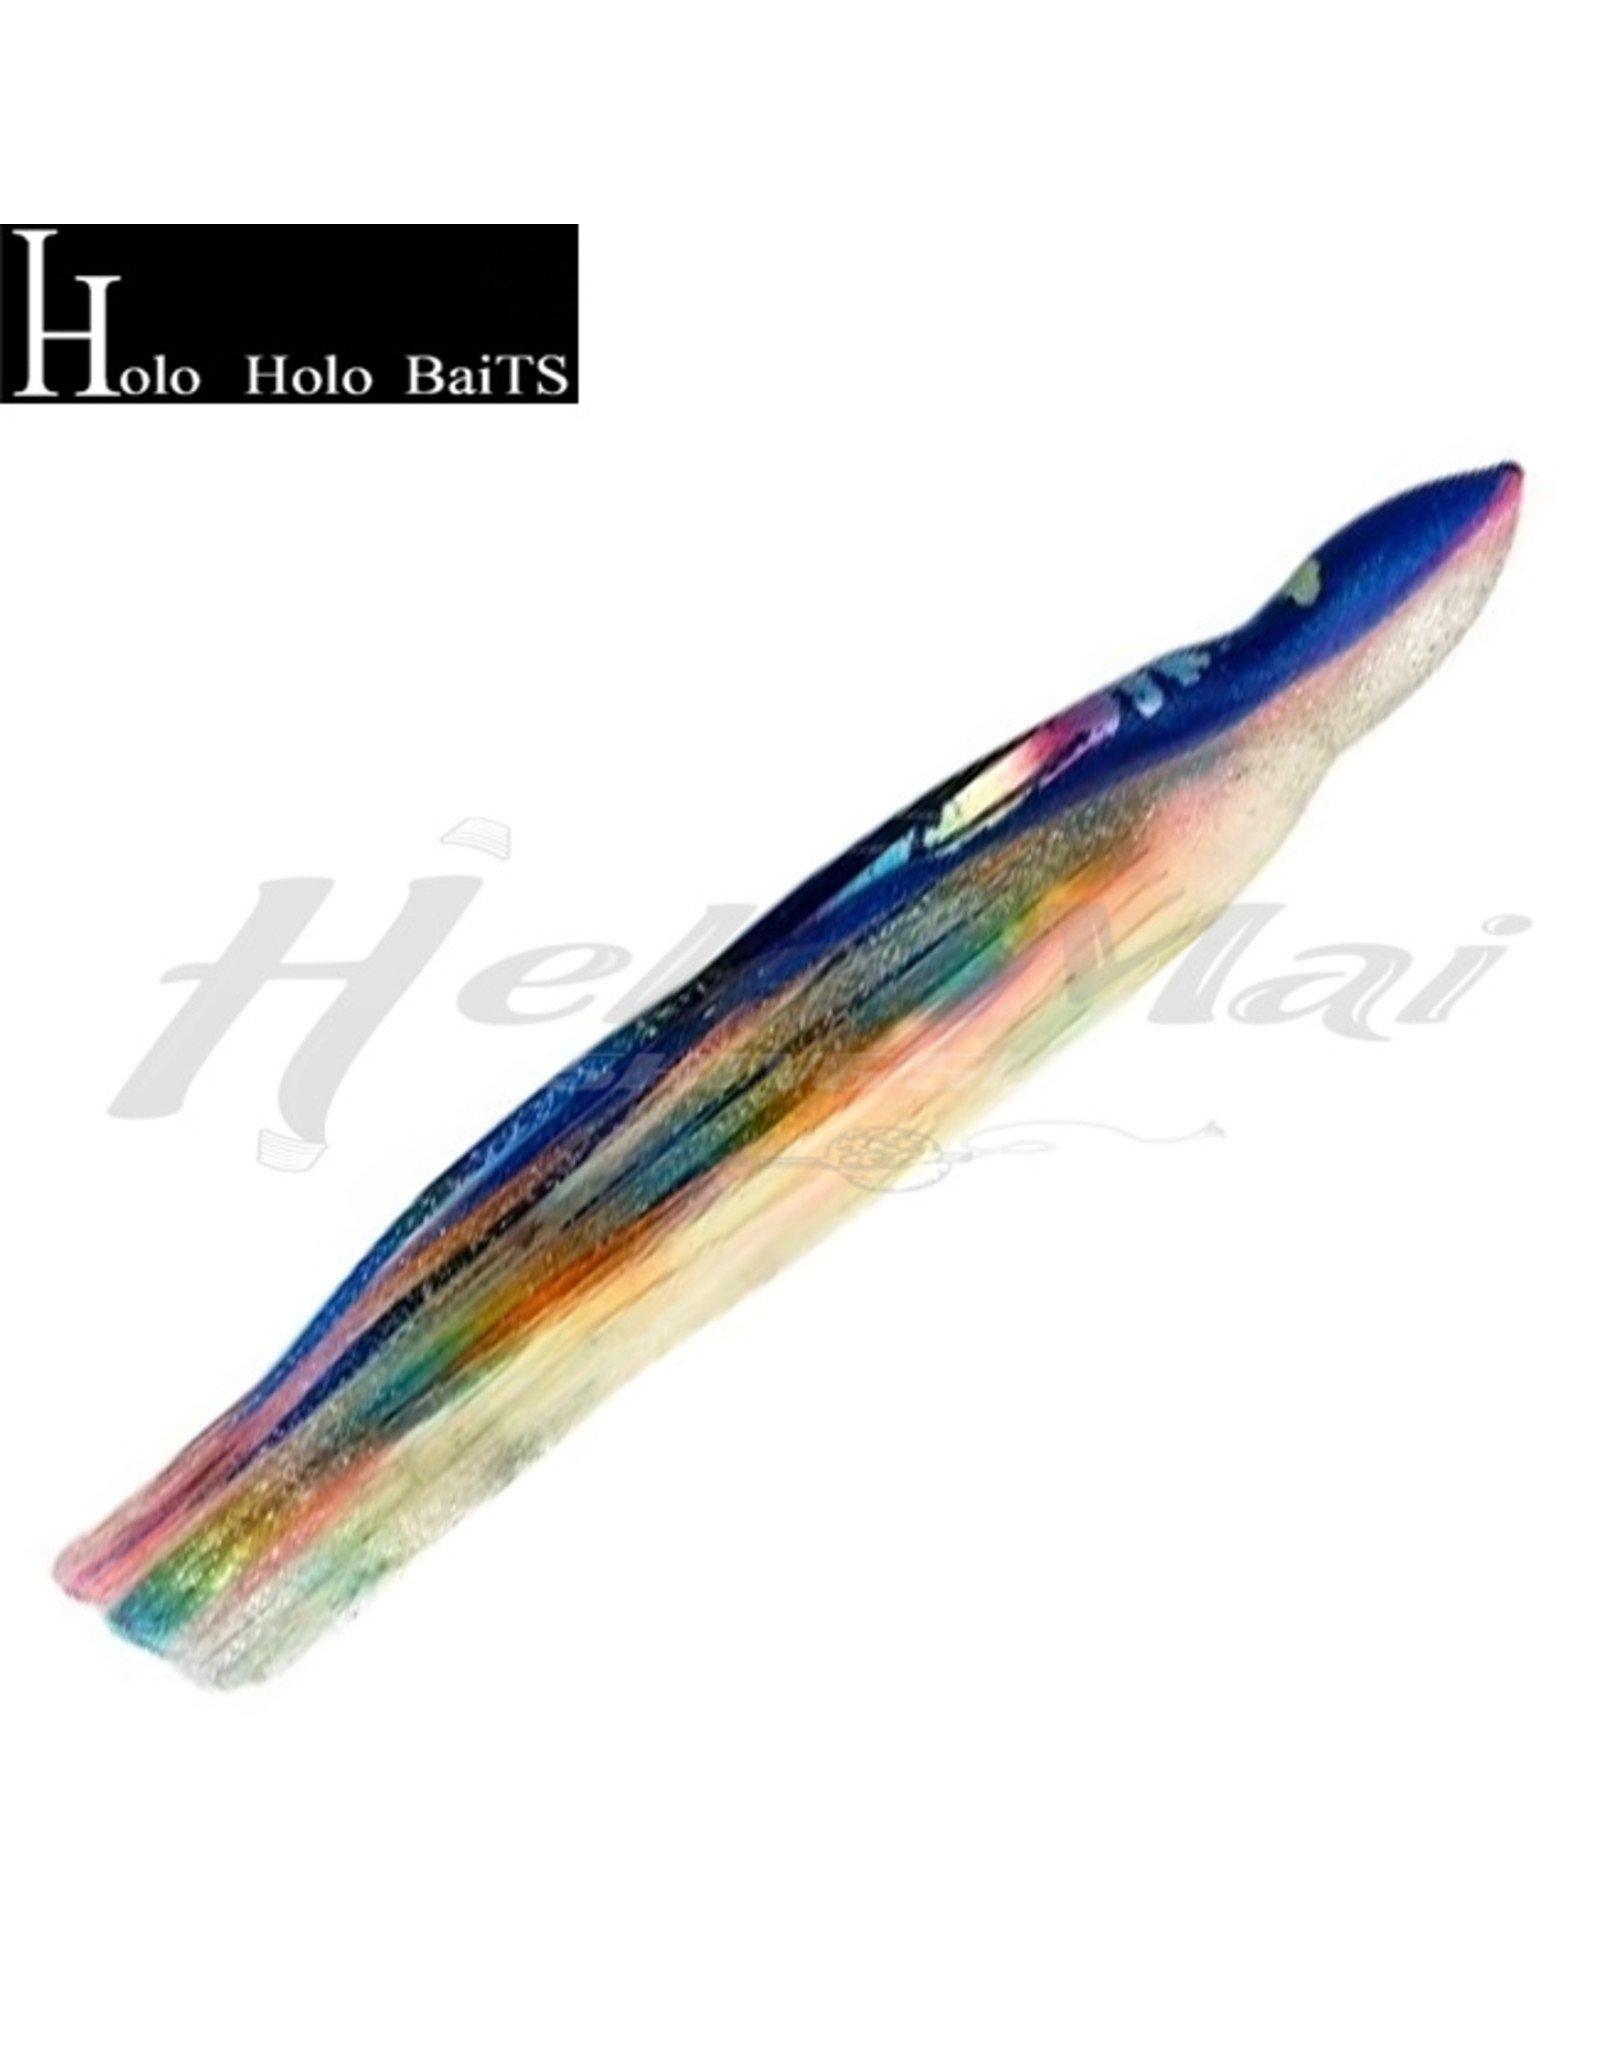 HOLO HOLO HAWAII (HHH) HH, 7" SQUID SKIRT RAINBOW GAY CLEAR 0711